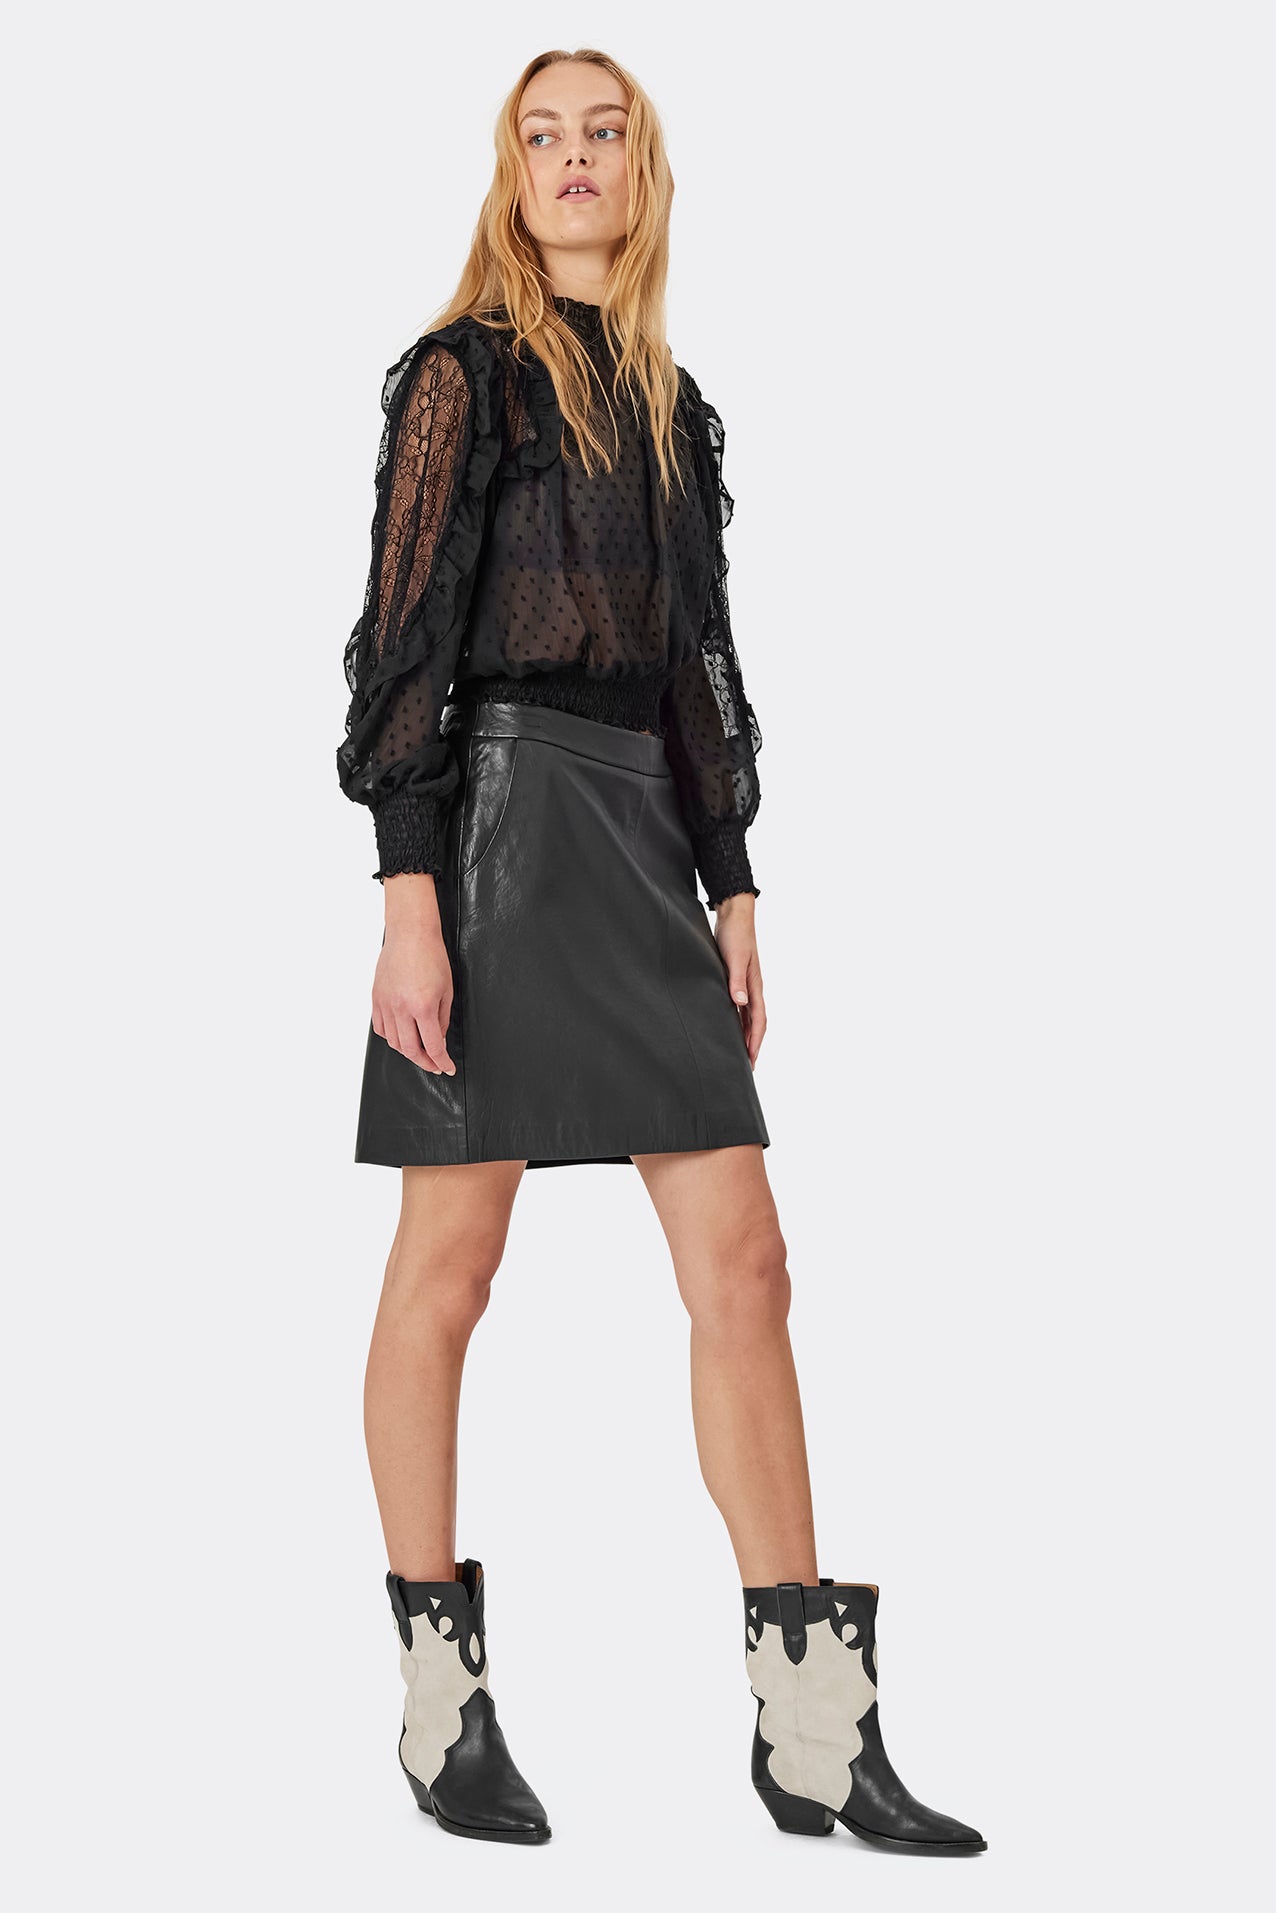 Lollys Laundry AquaLL Short Leather Skirt Skirt 99 Black